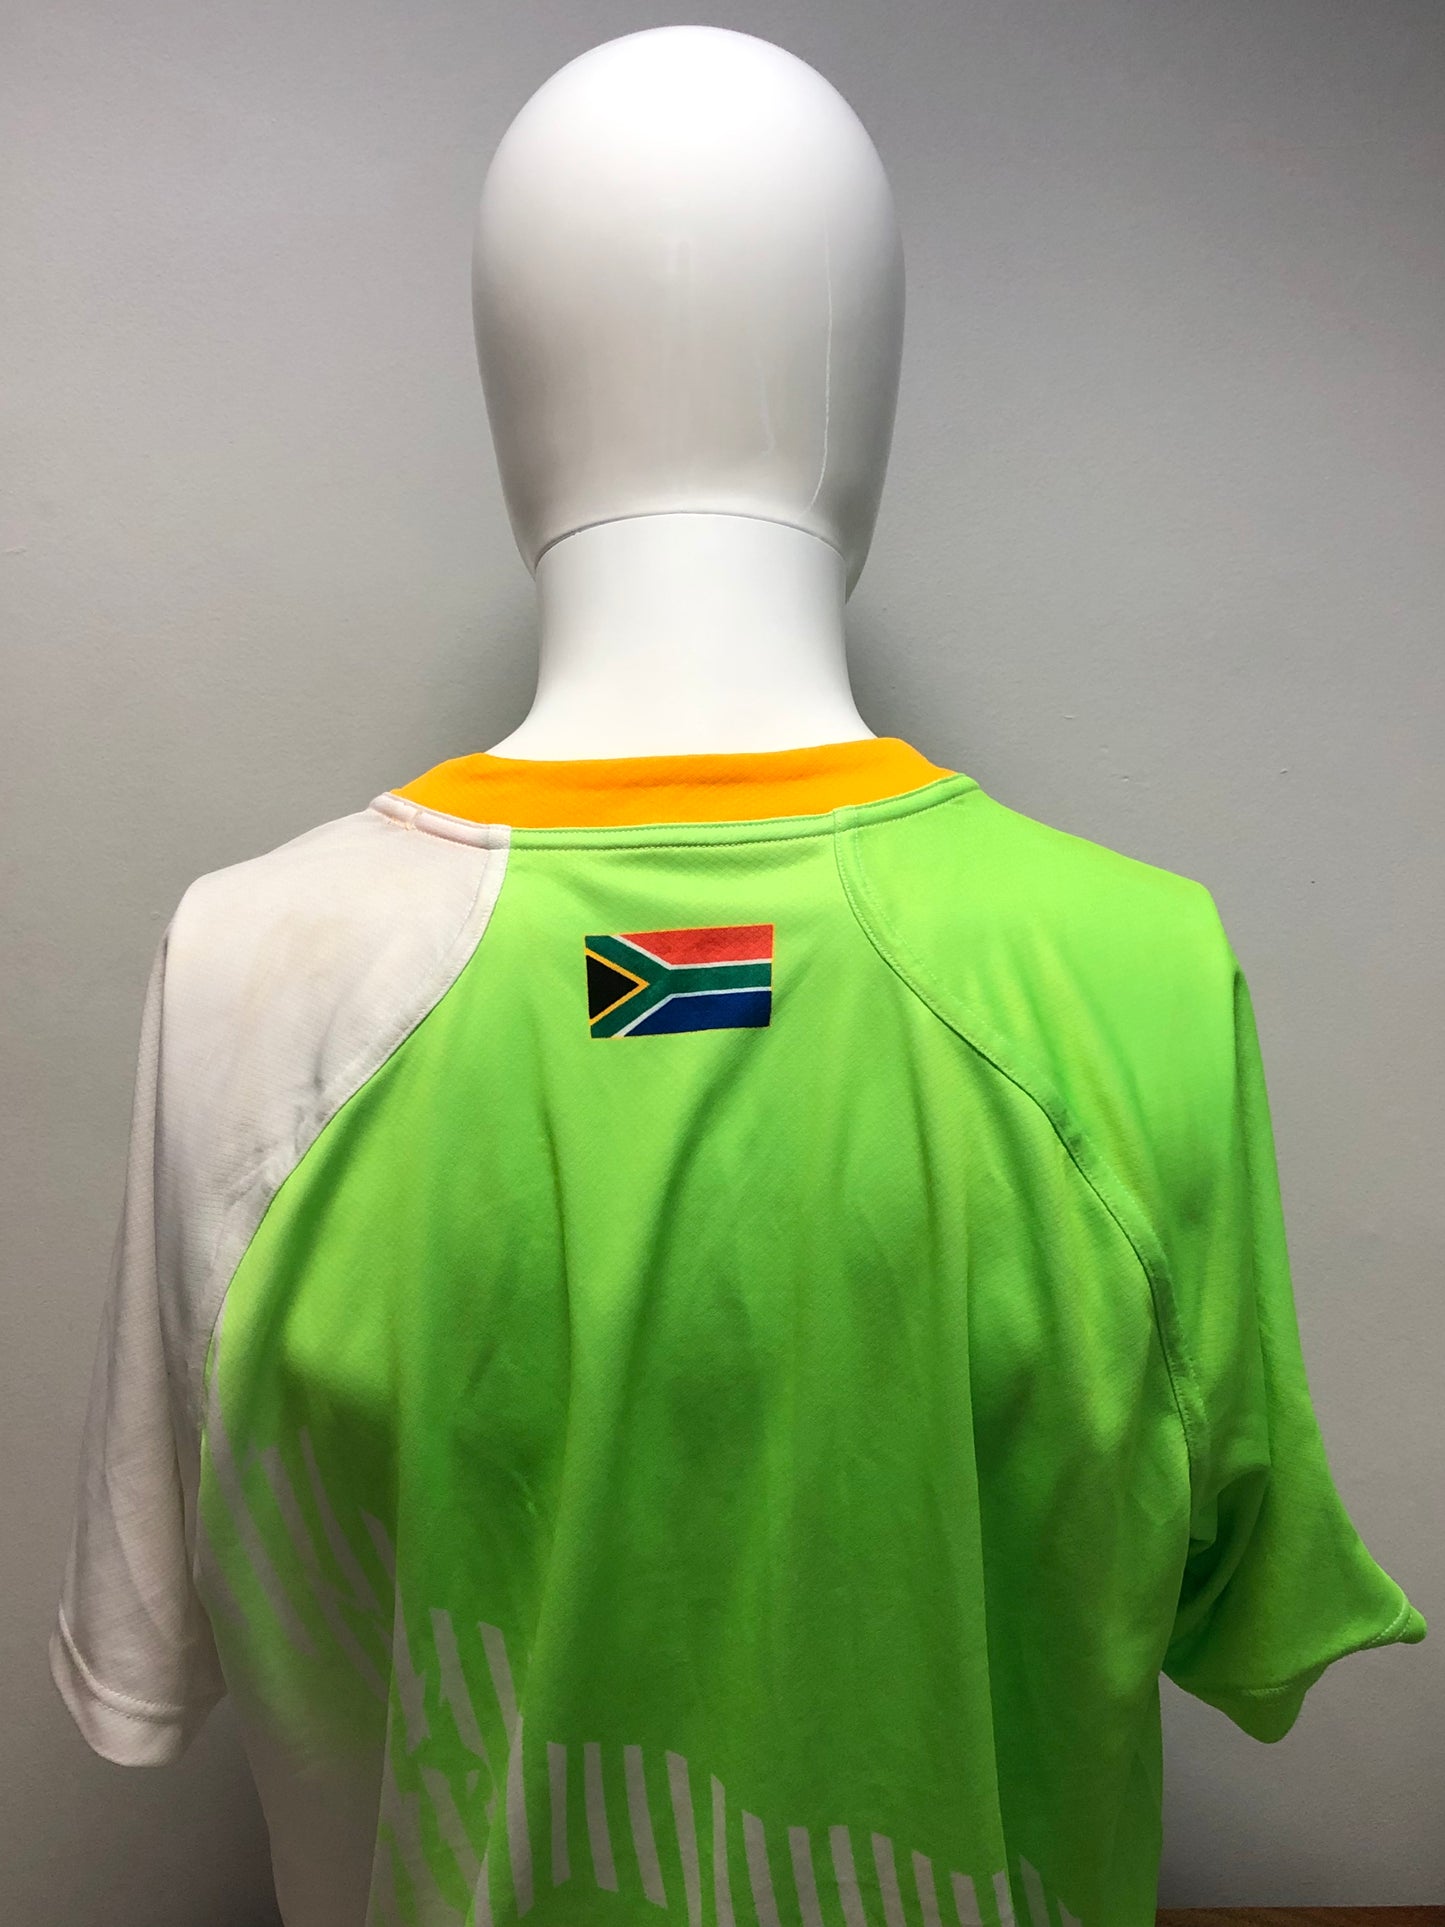 South Africa Blitzbok 7s Shirt - 2XL